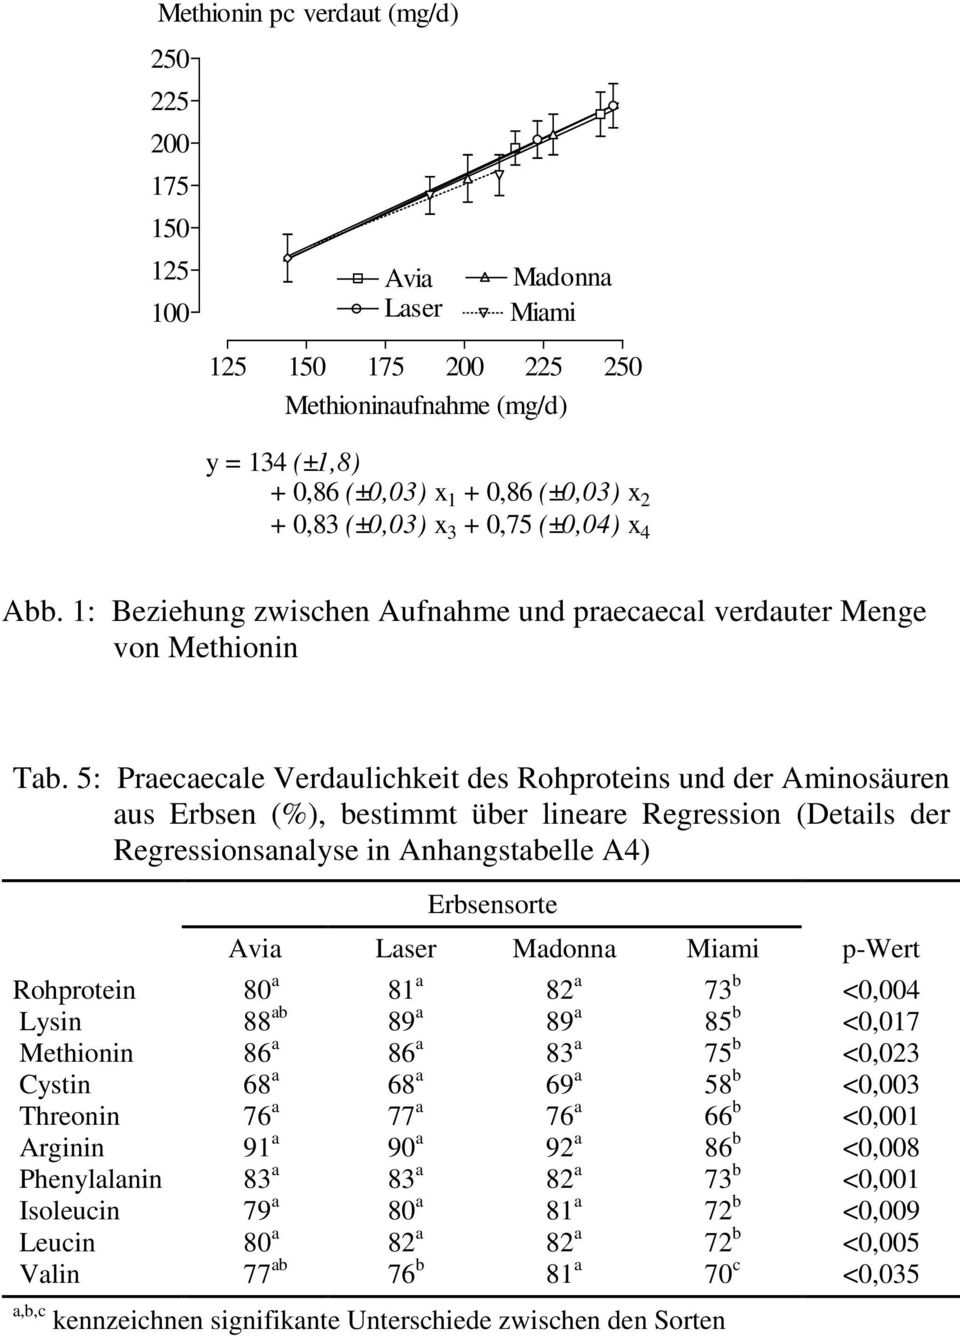 5: Praecaecale Verdaulichkeit des Rohproteins und der Aminosäuren aus Erbsen (%), bestimmt über lineare Regression (Details der Regressionsanalyse in Anhangstabelle A4) Erbsensorte Avia Laser Madonna